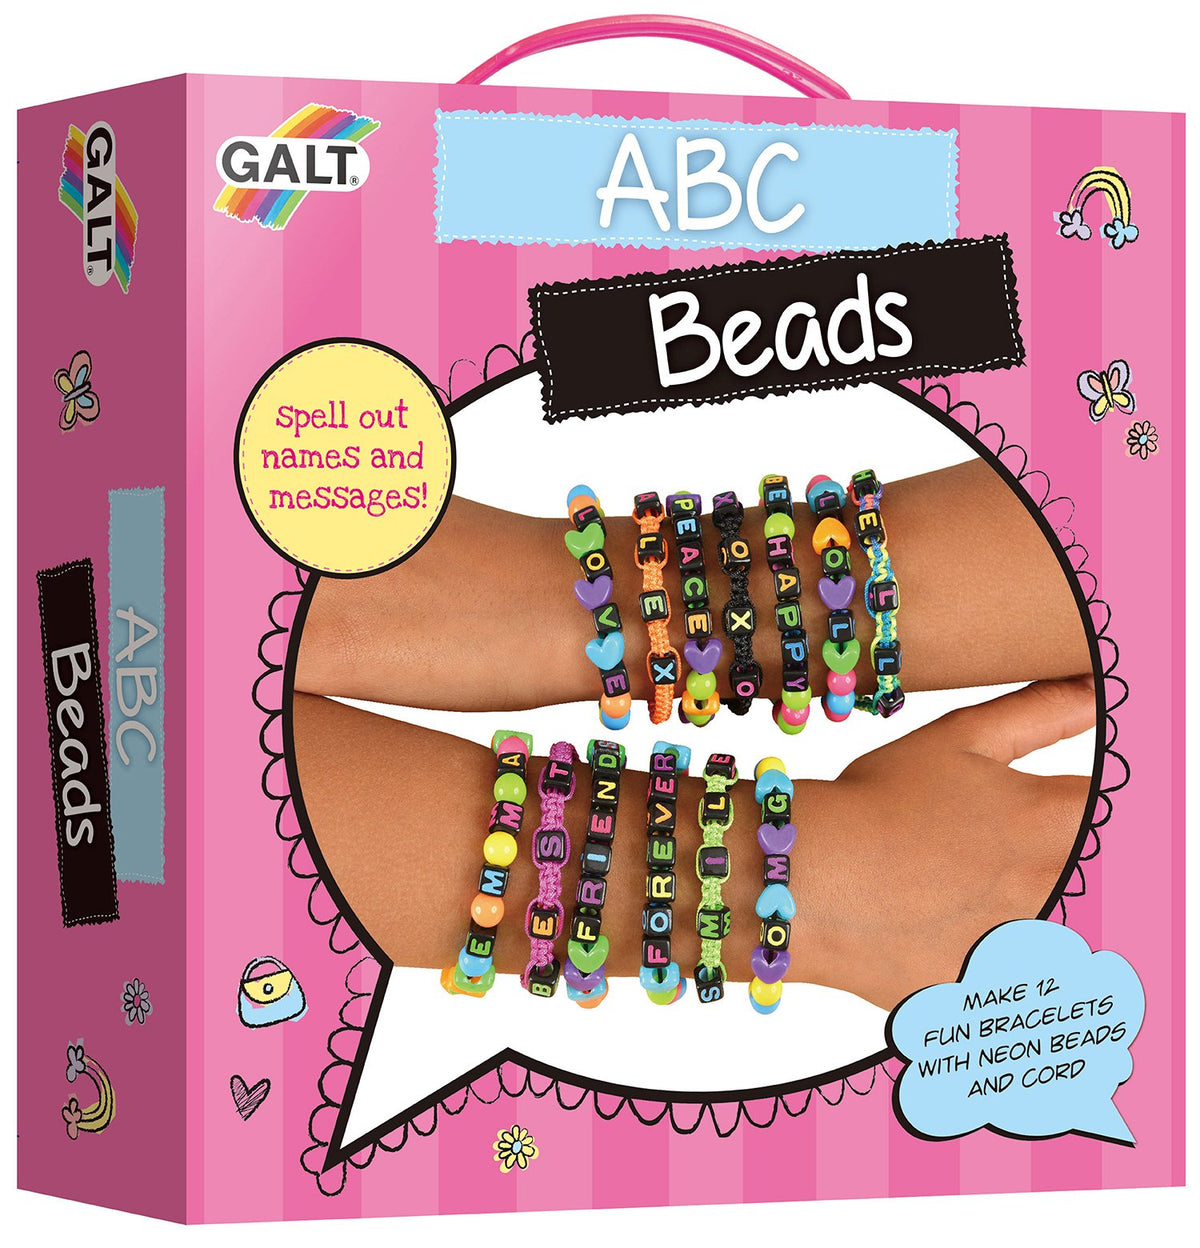 ABC Beads - Galt